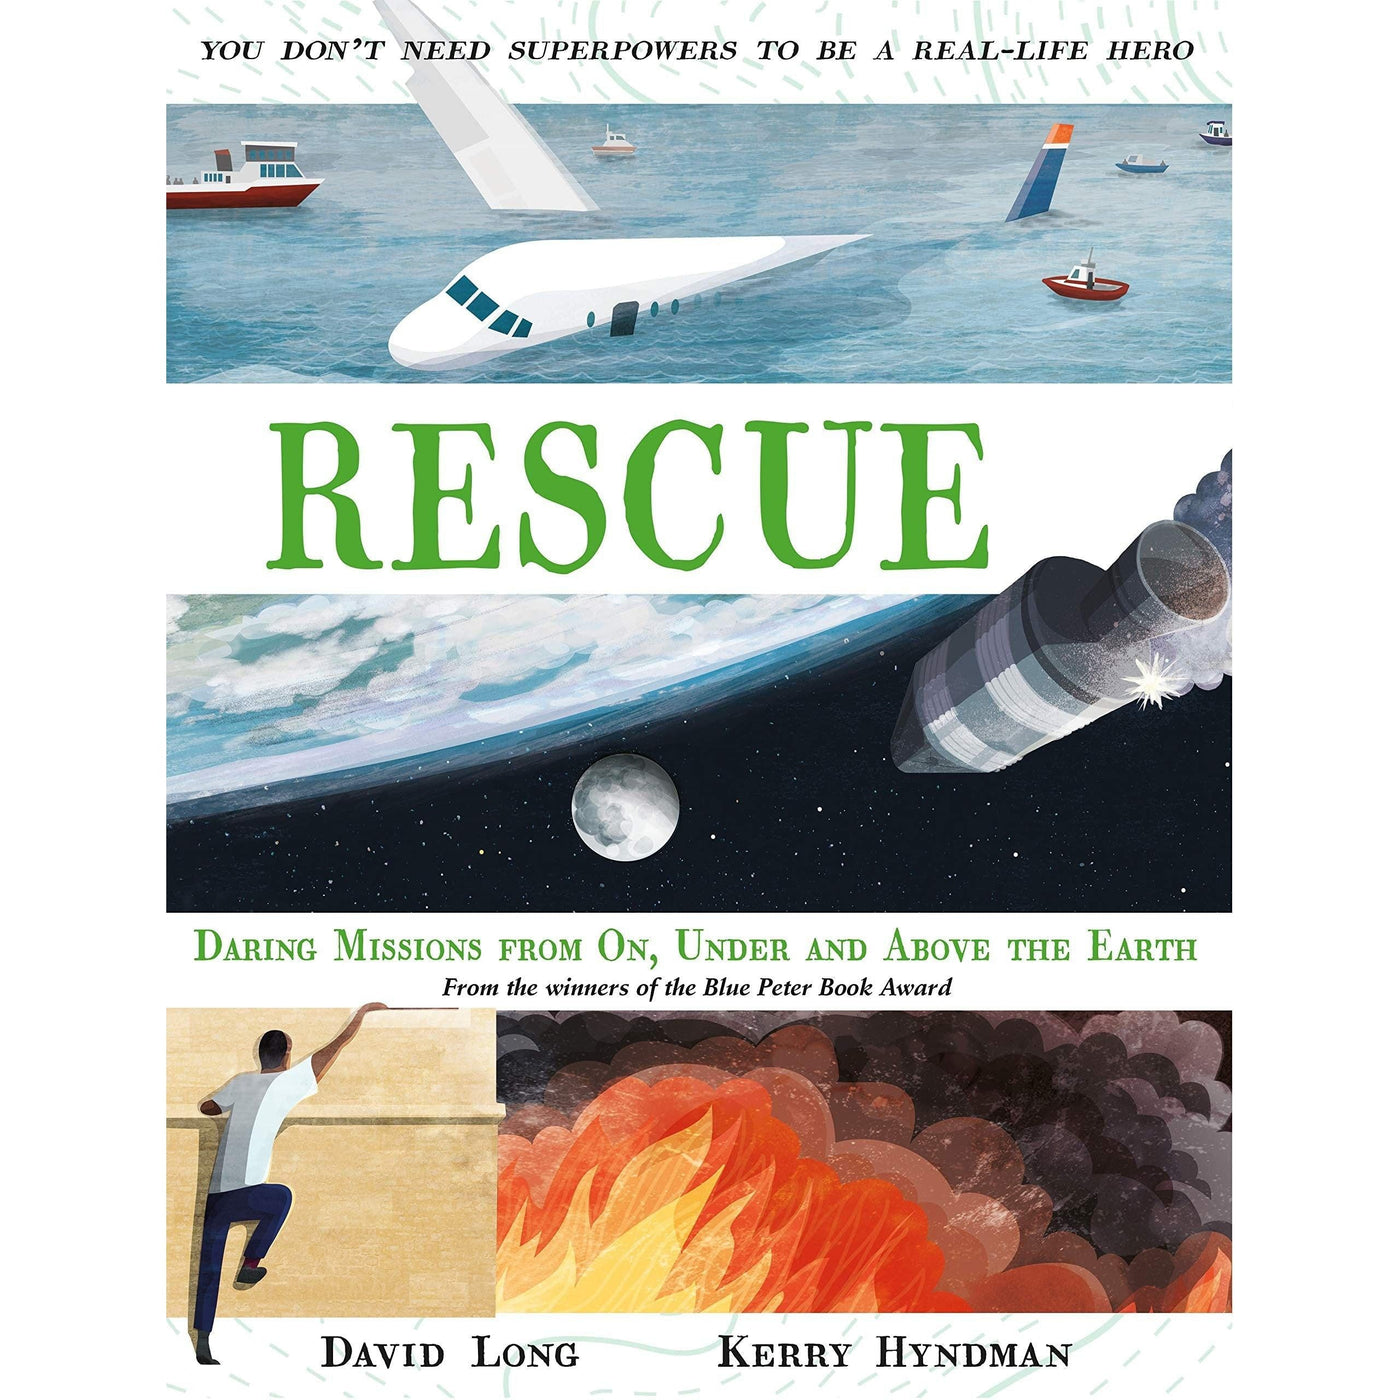 Rescue - David Long & Kerry Hyndman